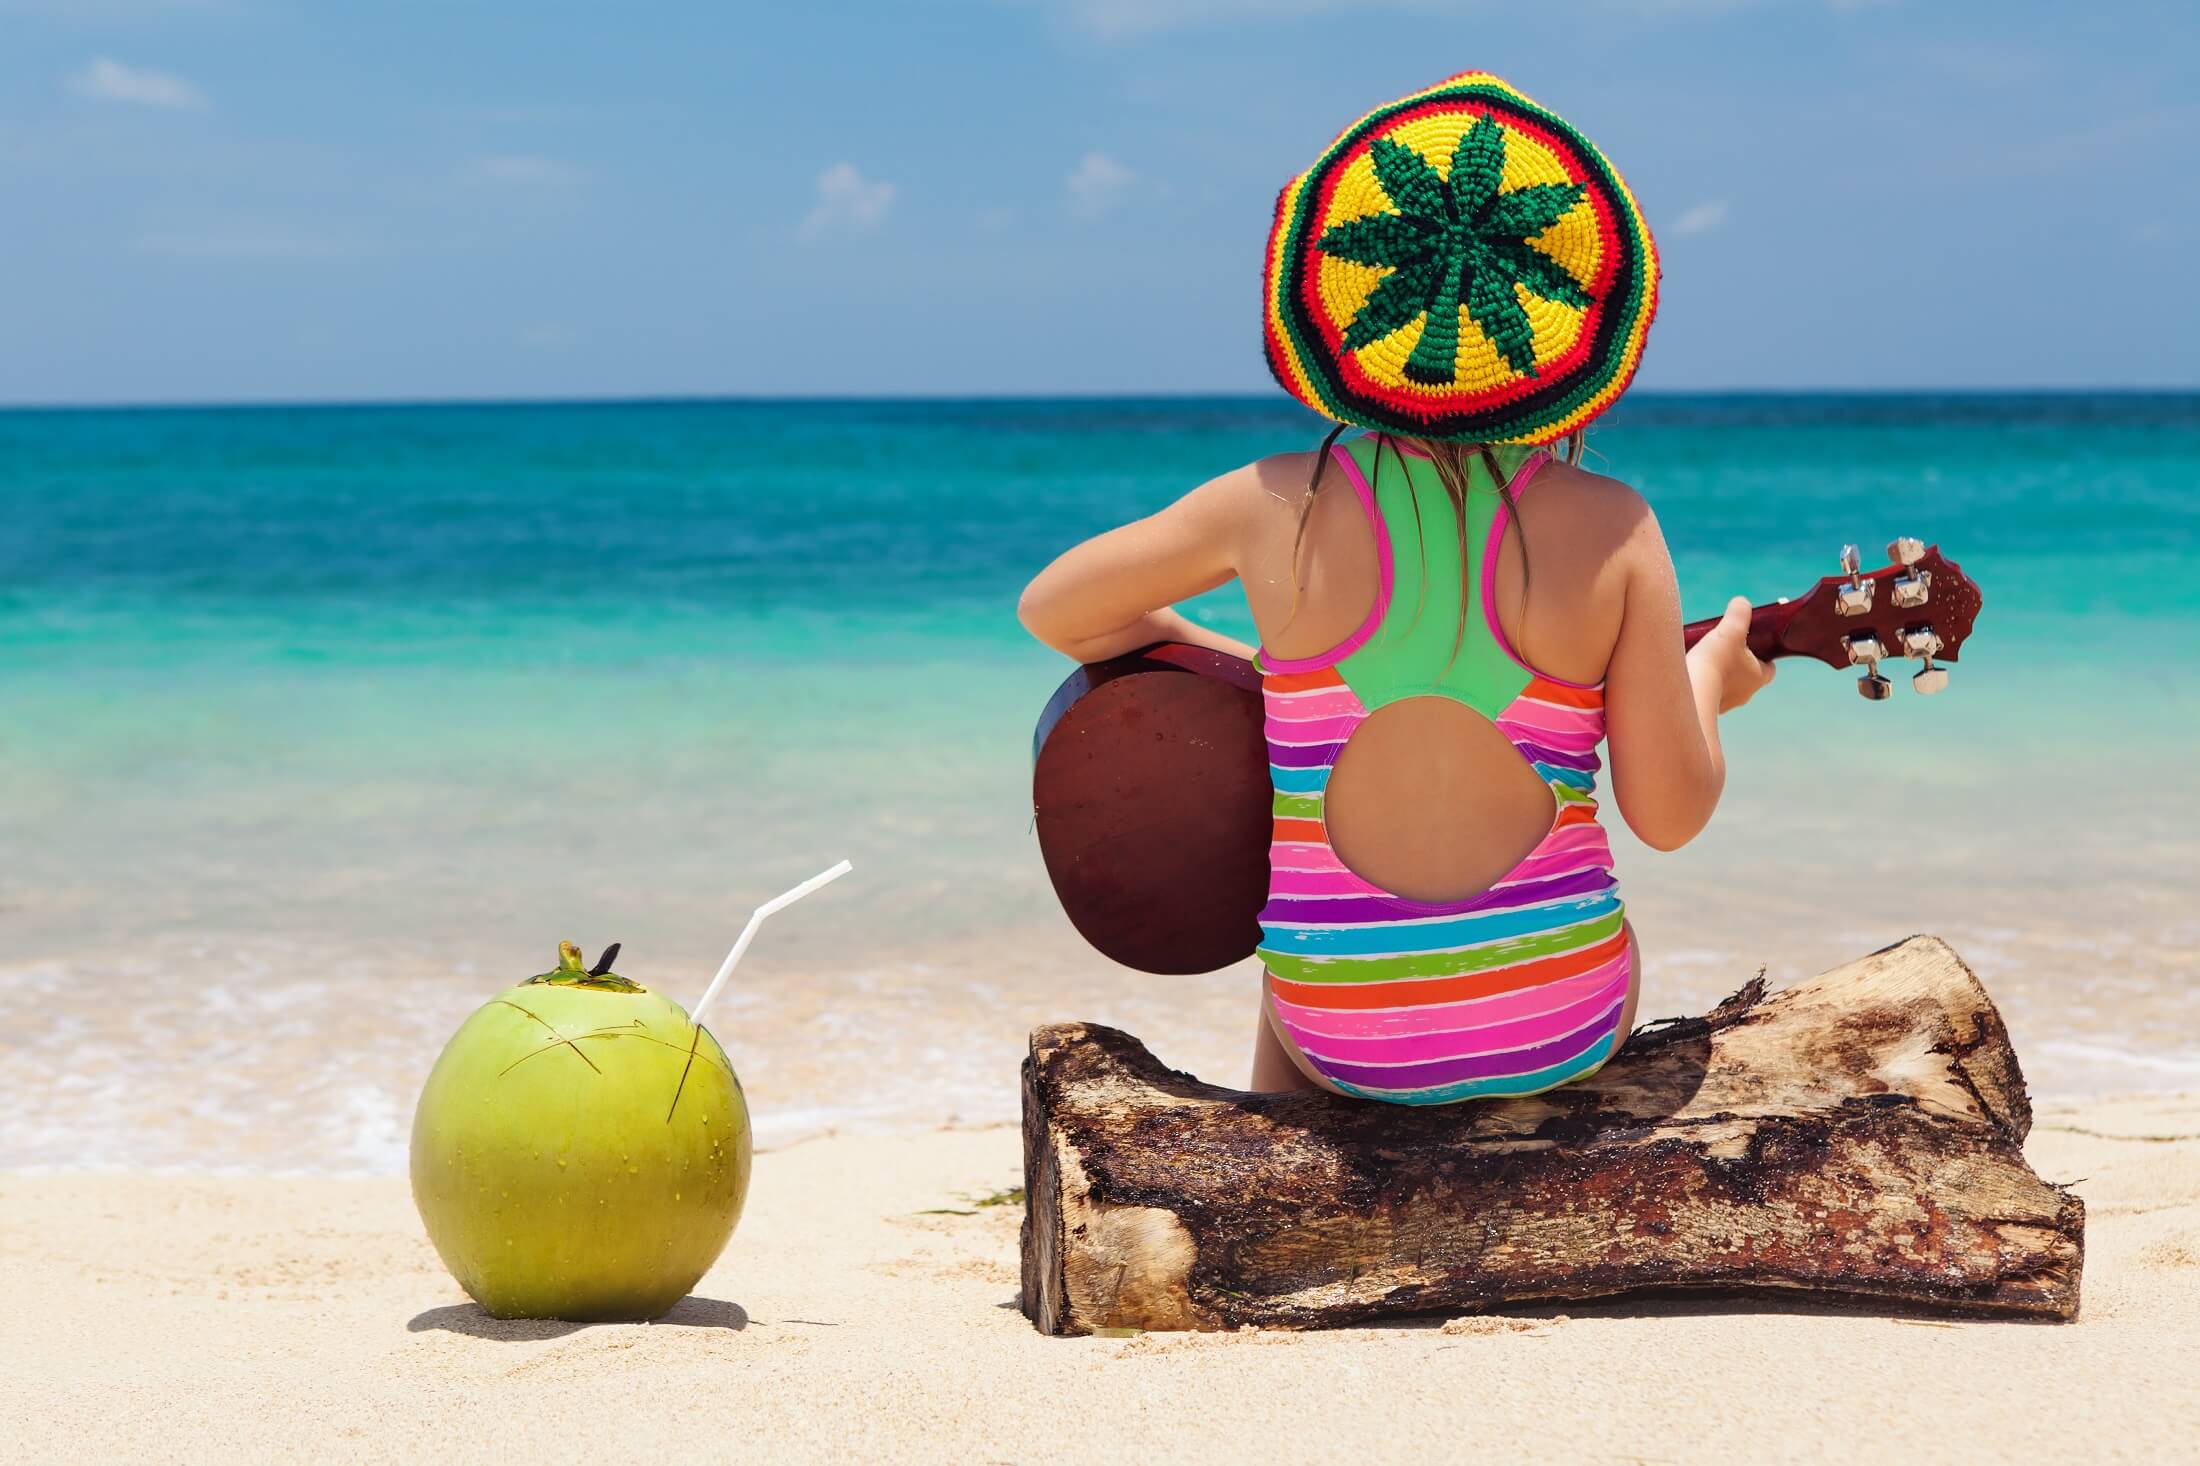 Małe szczęśliwe dziecko w rastaman kapelusz baw się dobrze, grać muzykę reggae na hawajskiej gitarze, cieszyć się relaks na plaży ocean. Dzieci zdrowy styl życia. Podróże, aktywność rodzinna na na tropikalnej wyspie wakacje